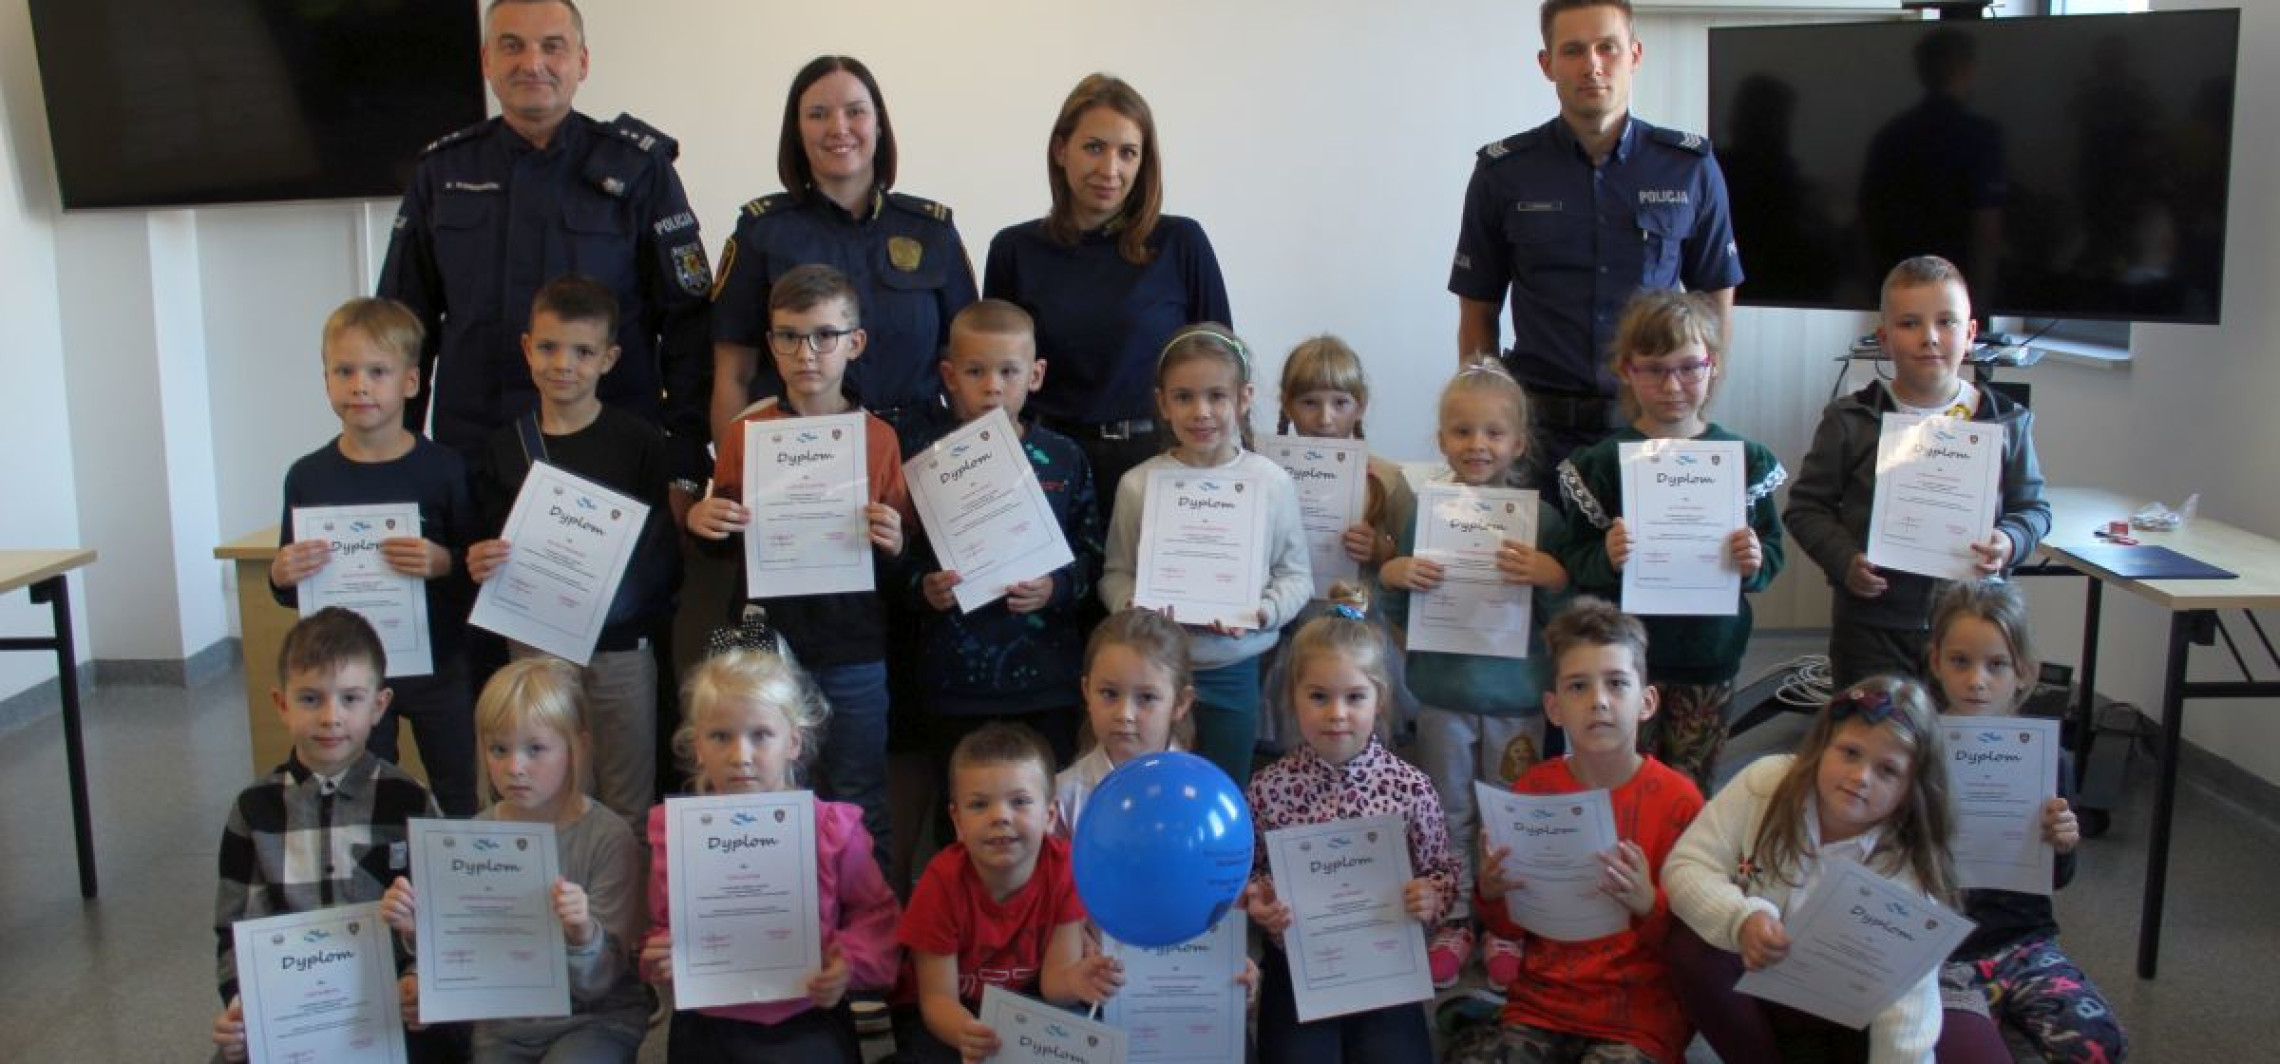 Inowrocław - 168 dzieci wzięło udział w konkursie na temat bezpieczeństwa. Oto zwycięzcy